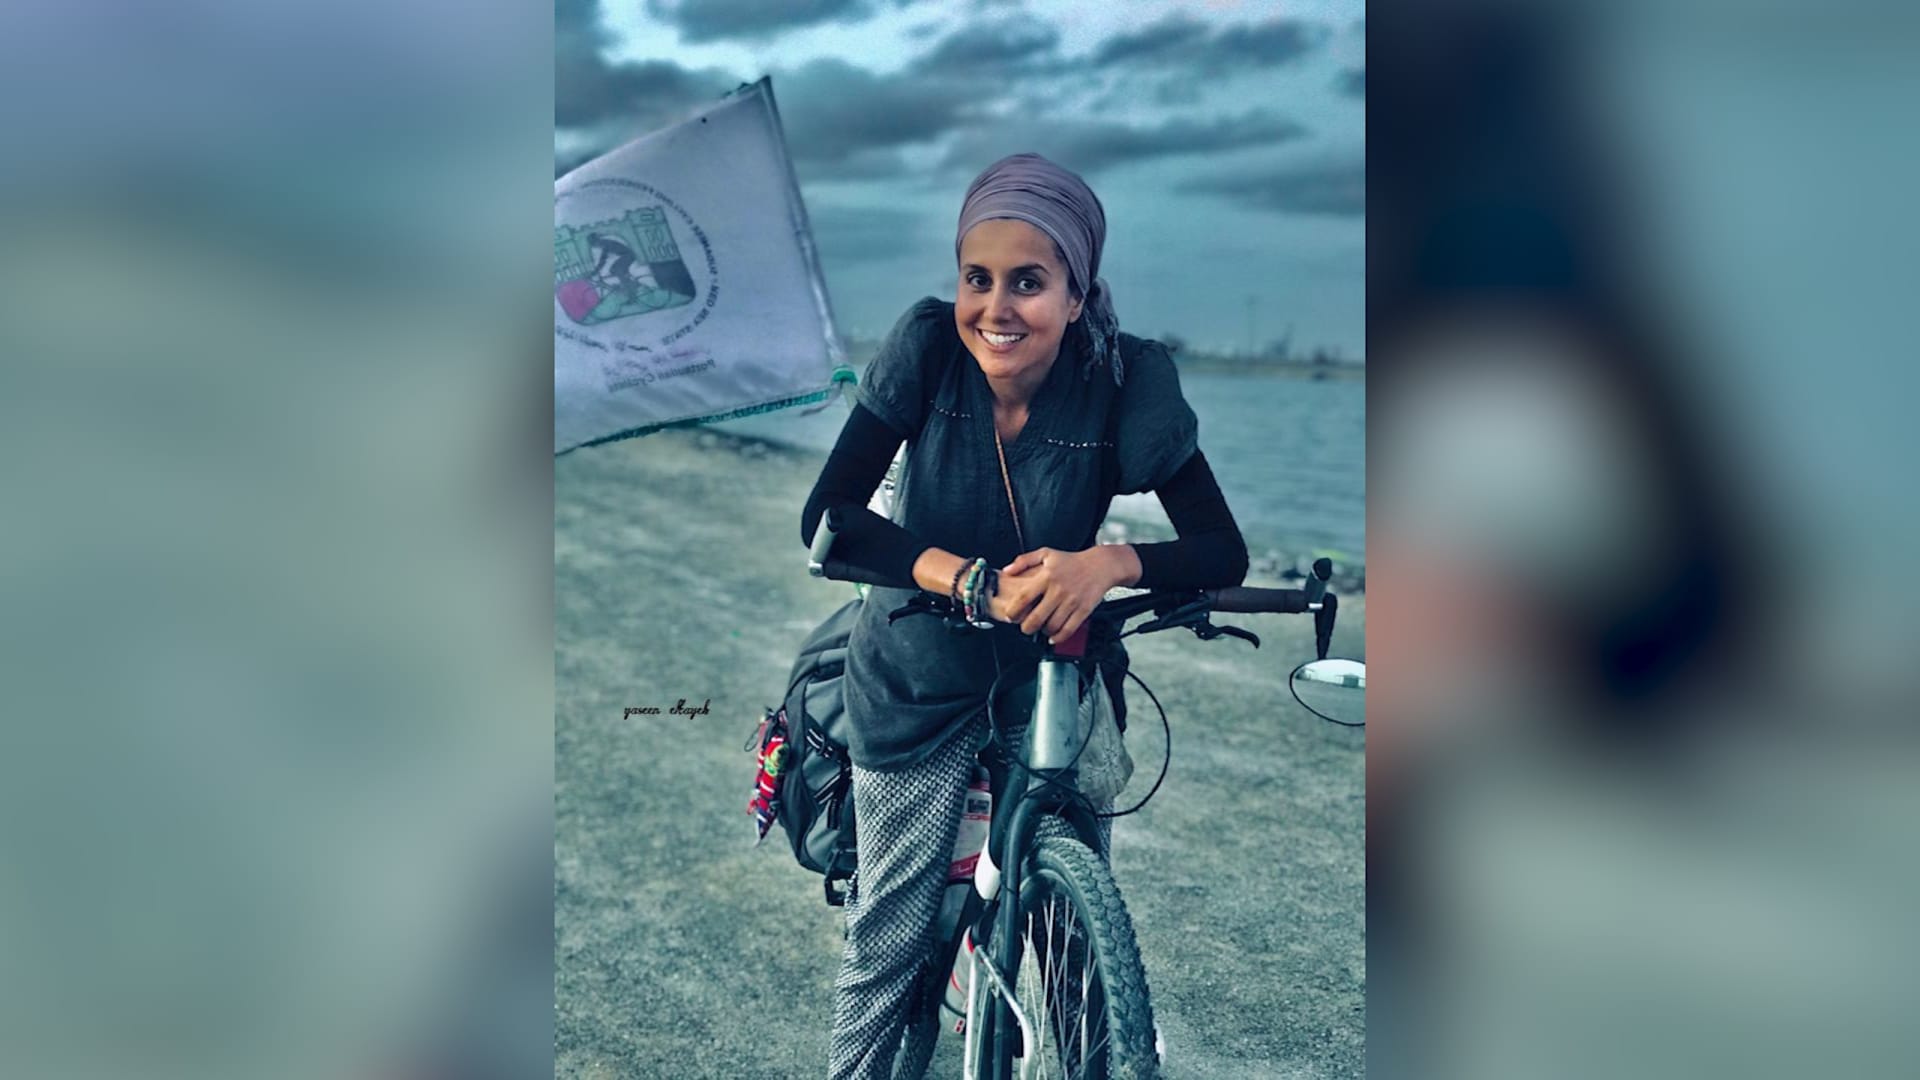 أول امرأة تصل إلى مكة بمفردها على الدراجة الهوائية